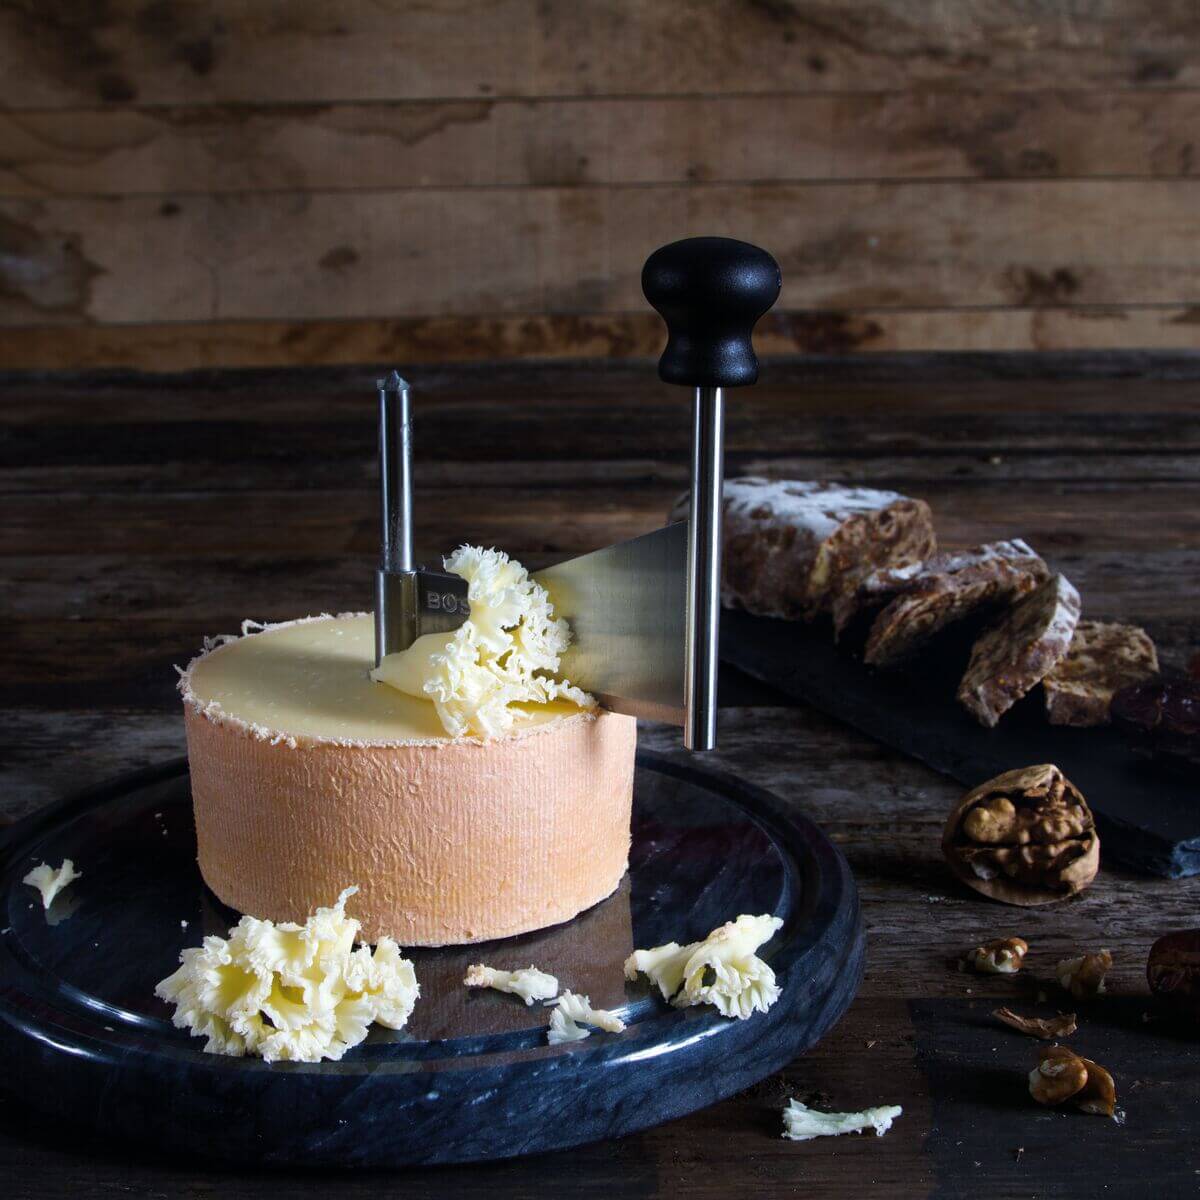 Vente en ligne de Girolle fromage Tête-de-Moine, Edam avec cloche Boska